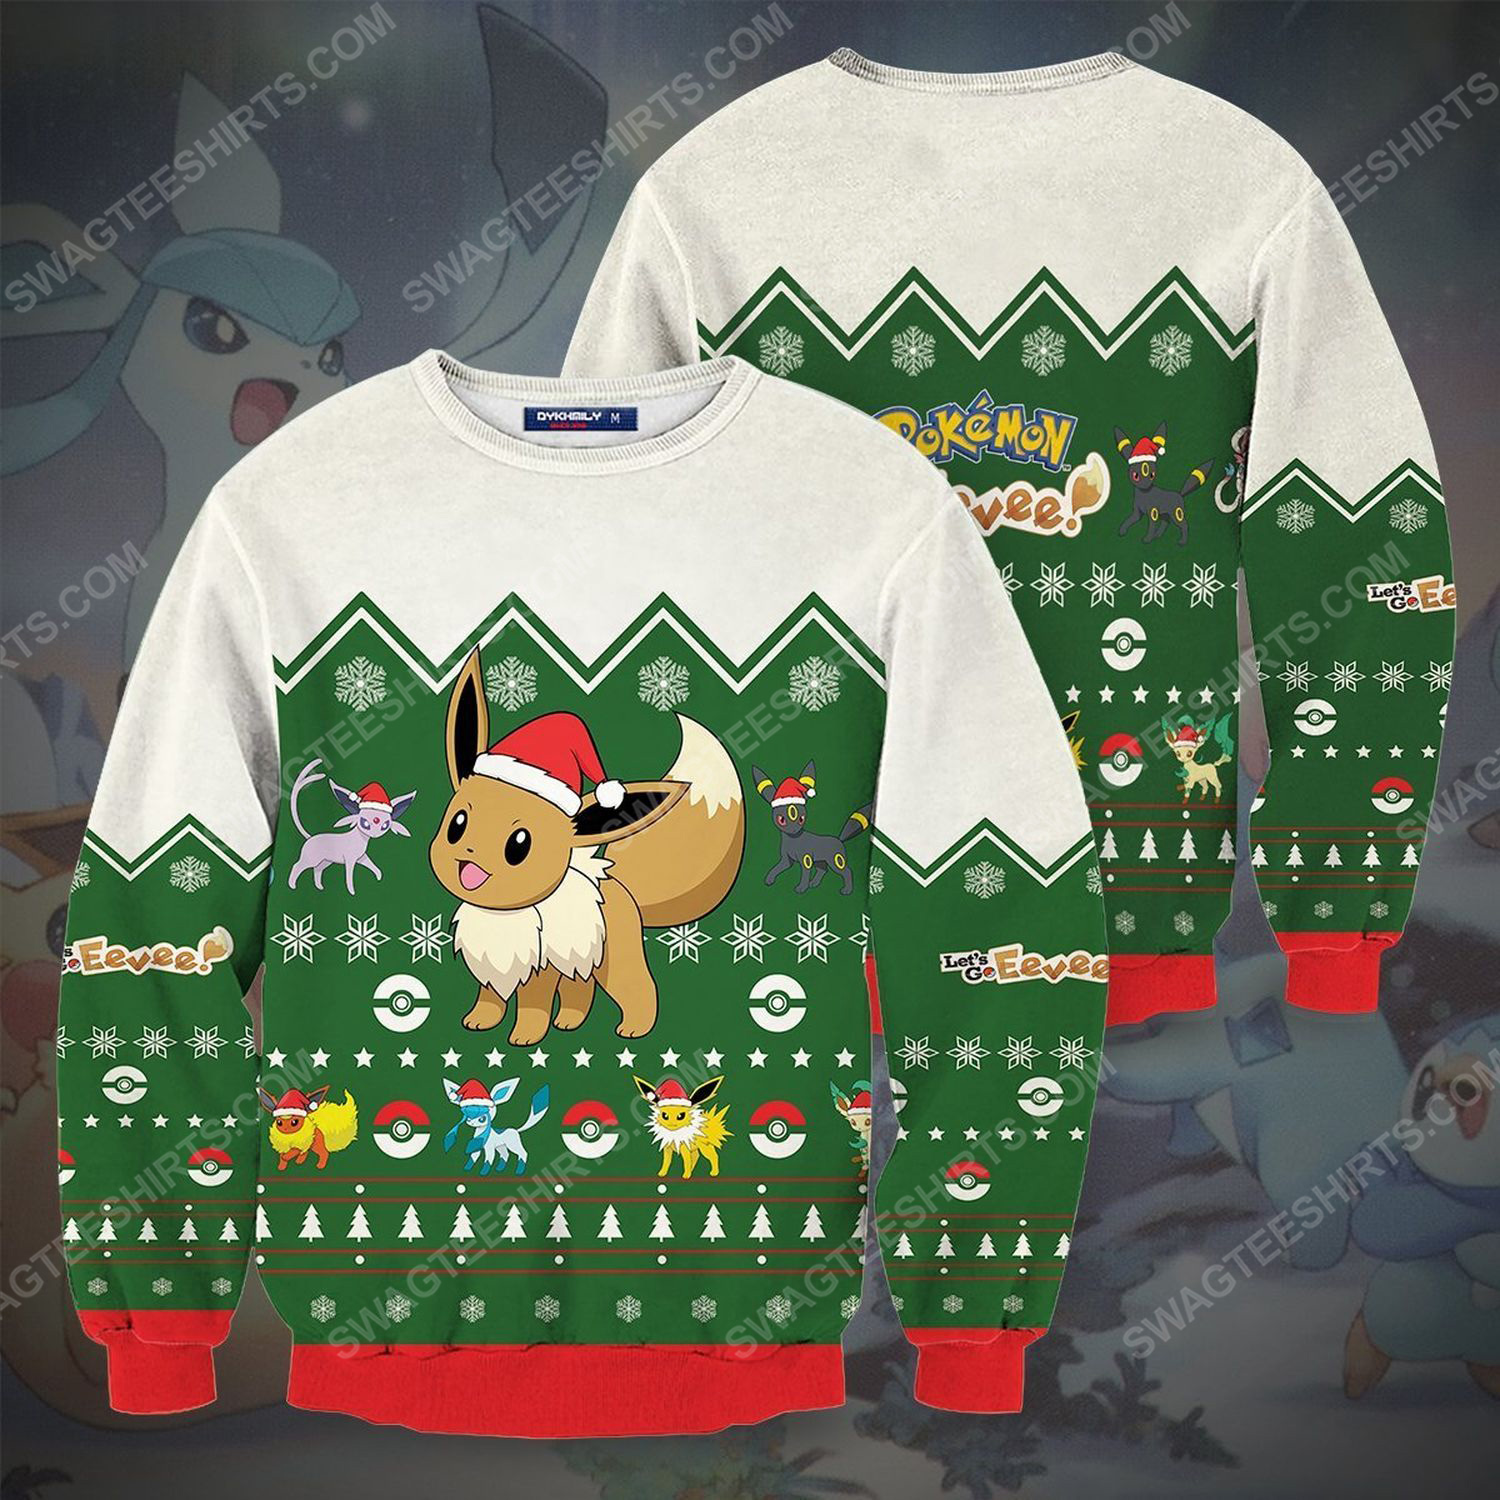 Pokemon eevee full print ugly christmas sweater 2